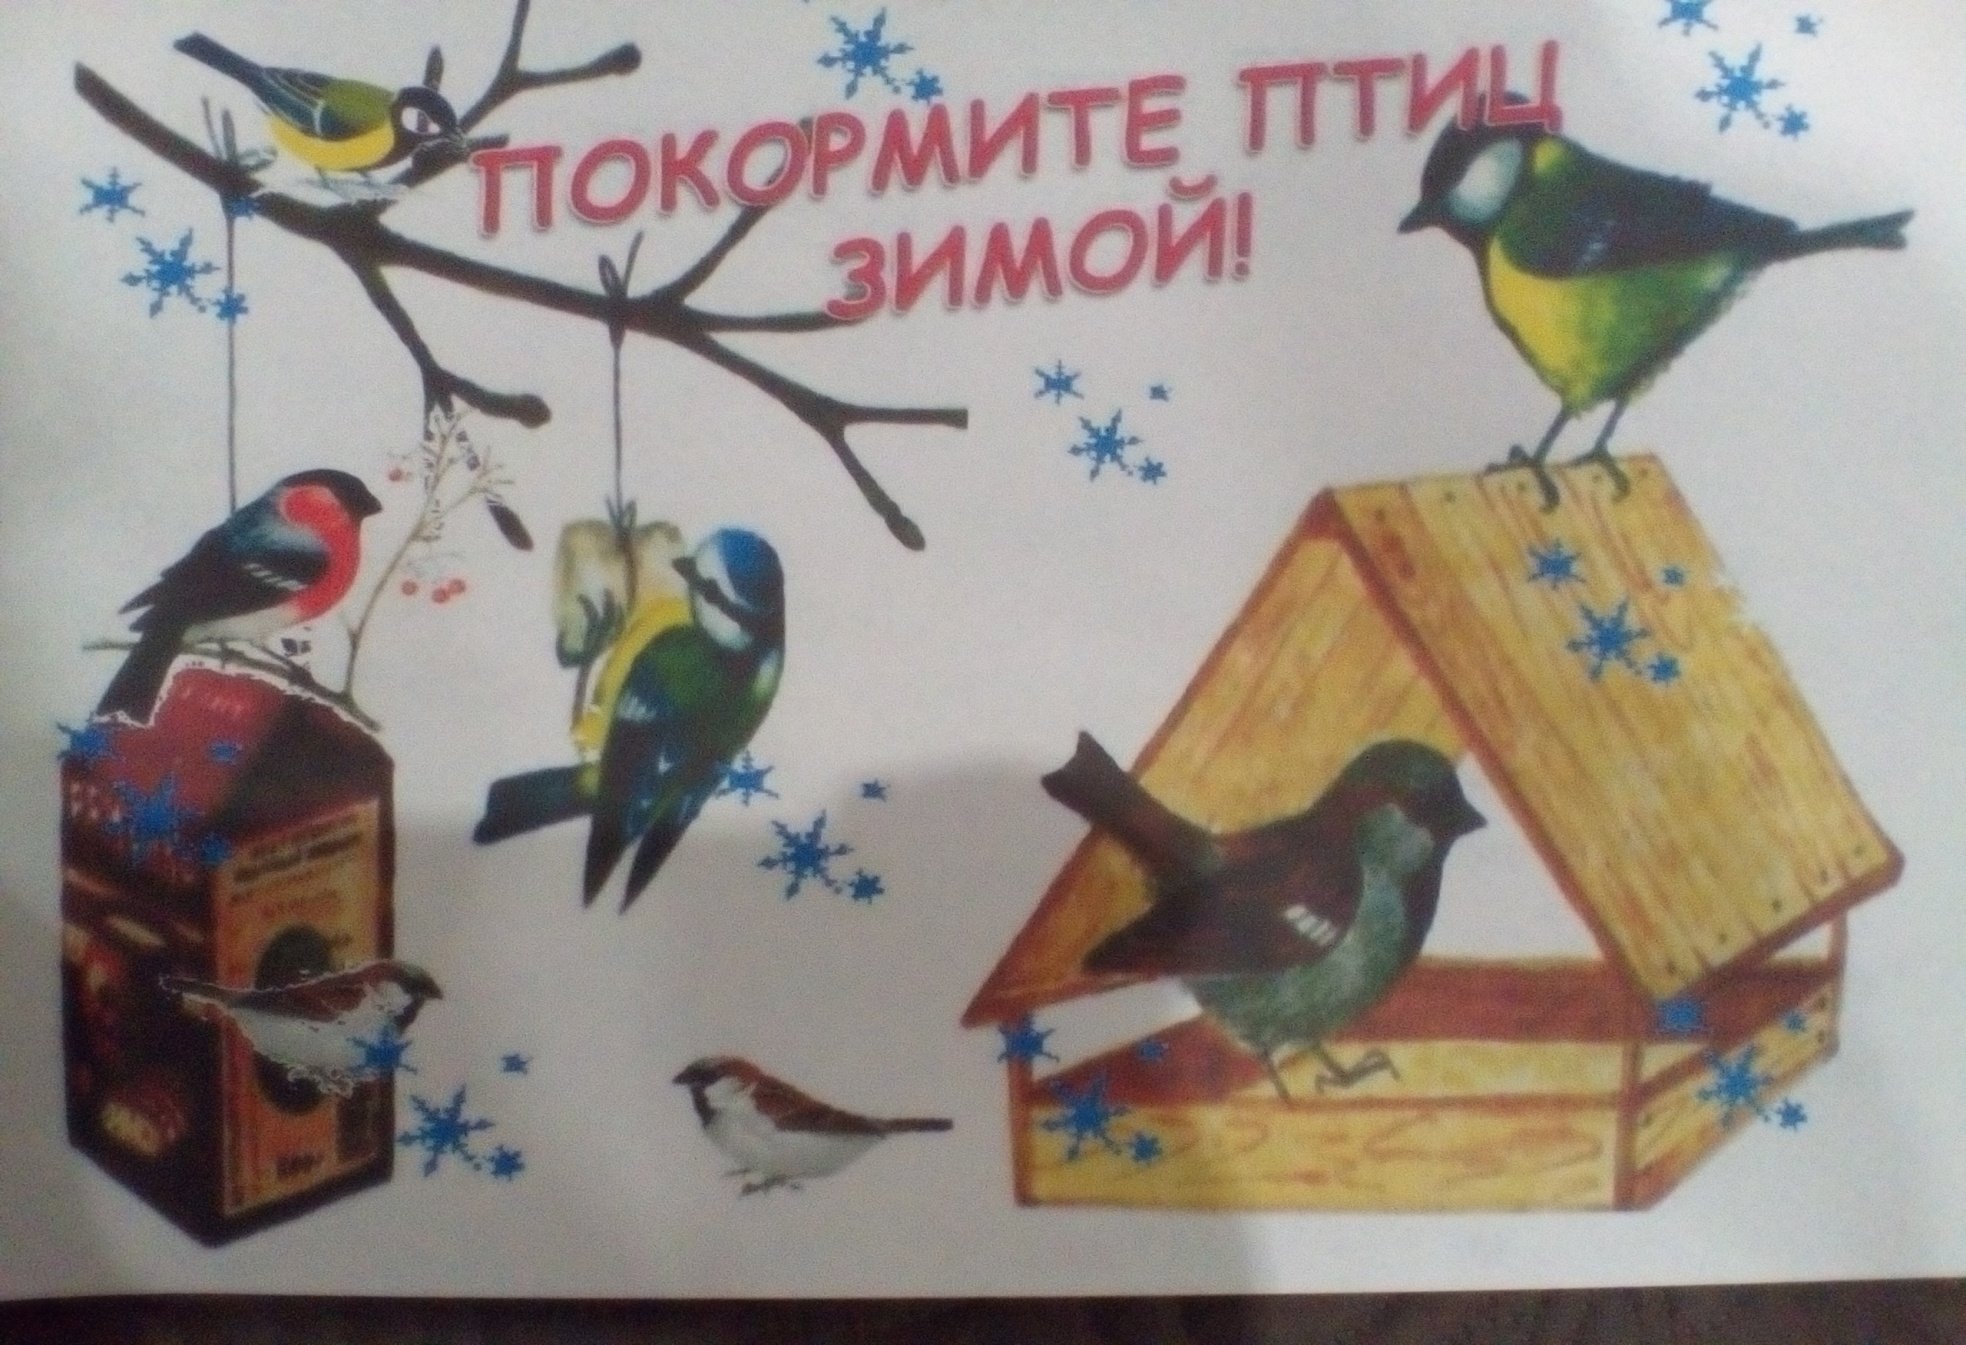 Плакат. Зимующие птицы.